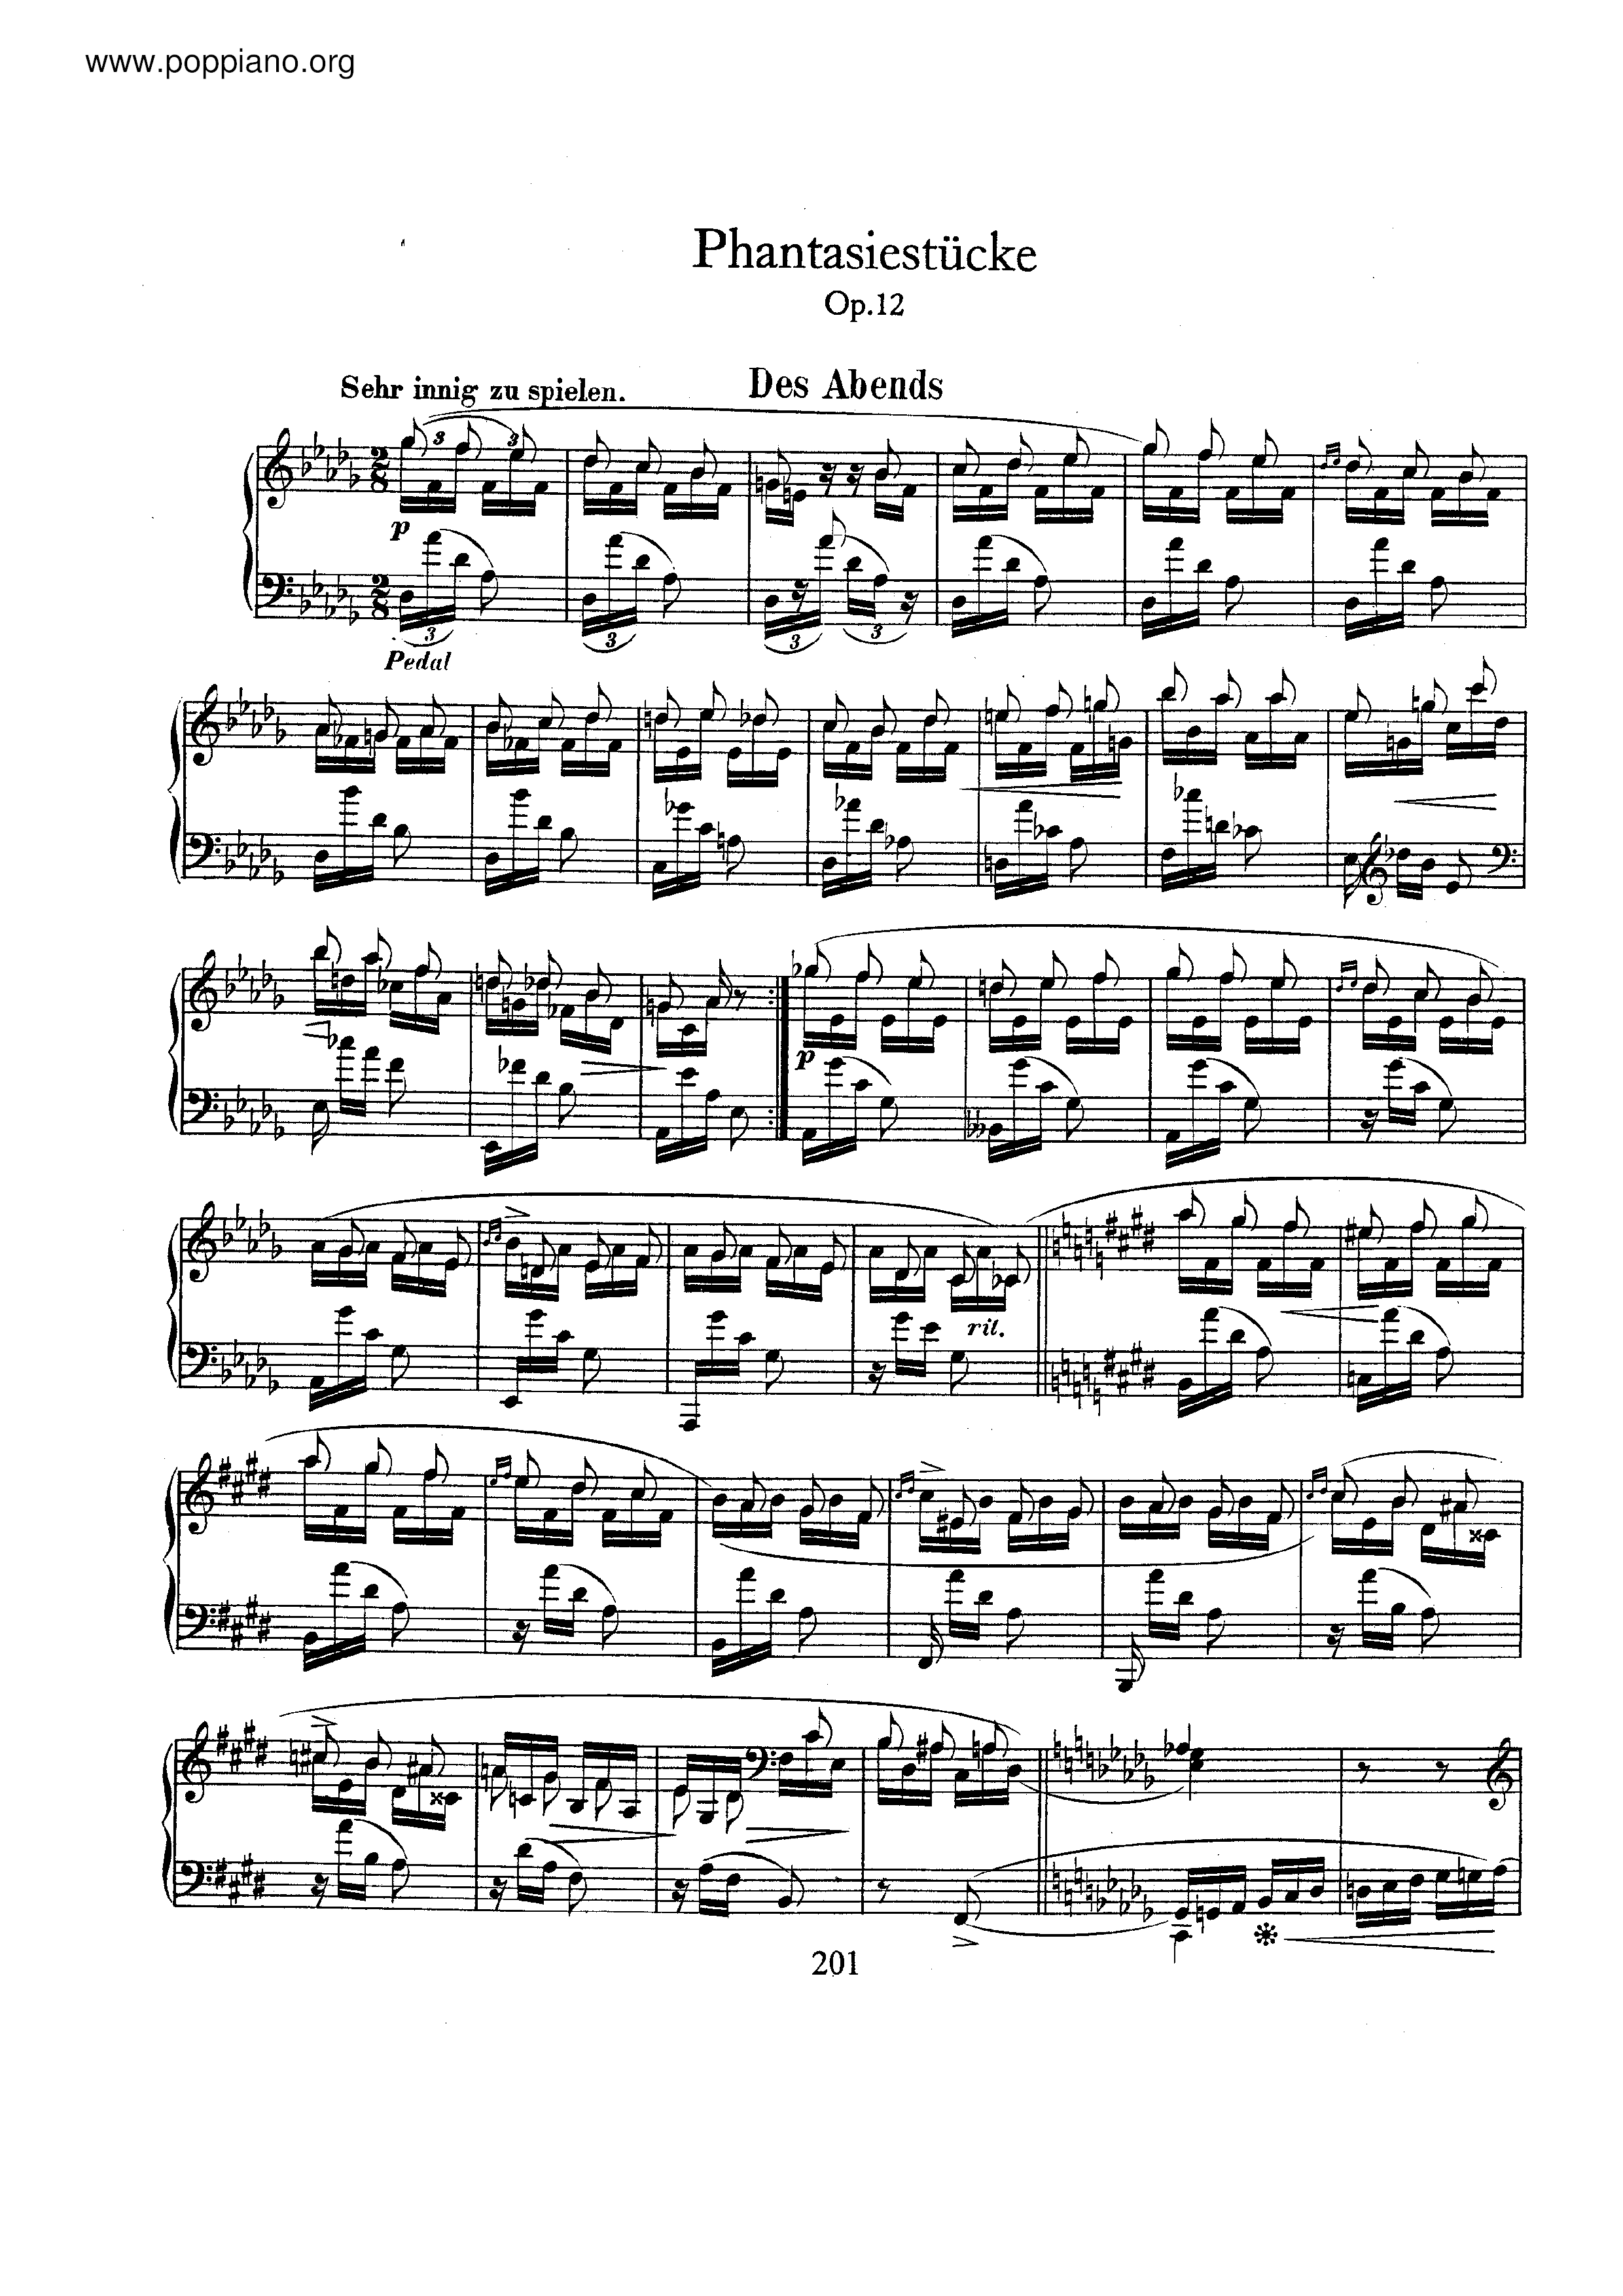 Fantasiestucke, Op.12ピアノ譜